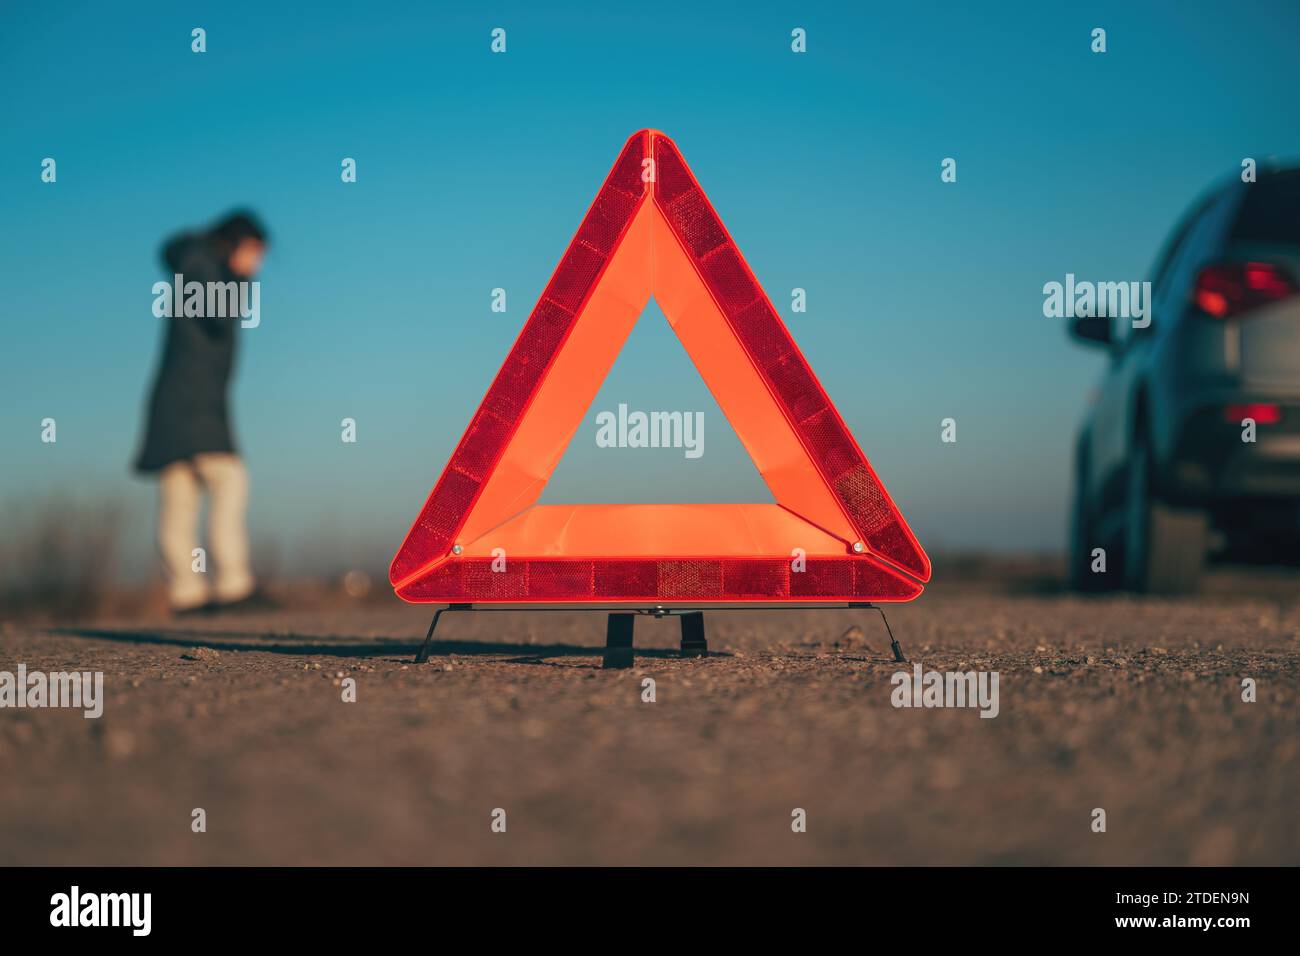 Panne de véhicule, triangle d'avertissement rouge sur la route avec une voiture en panne et une femme faisant un appel téléphonique au service routier, mise au point sélective Banque D'Images